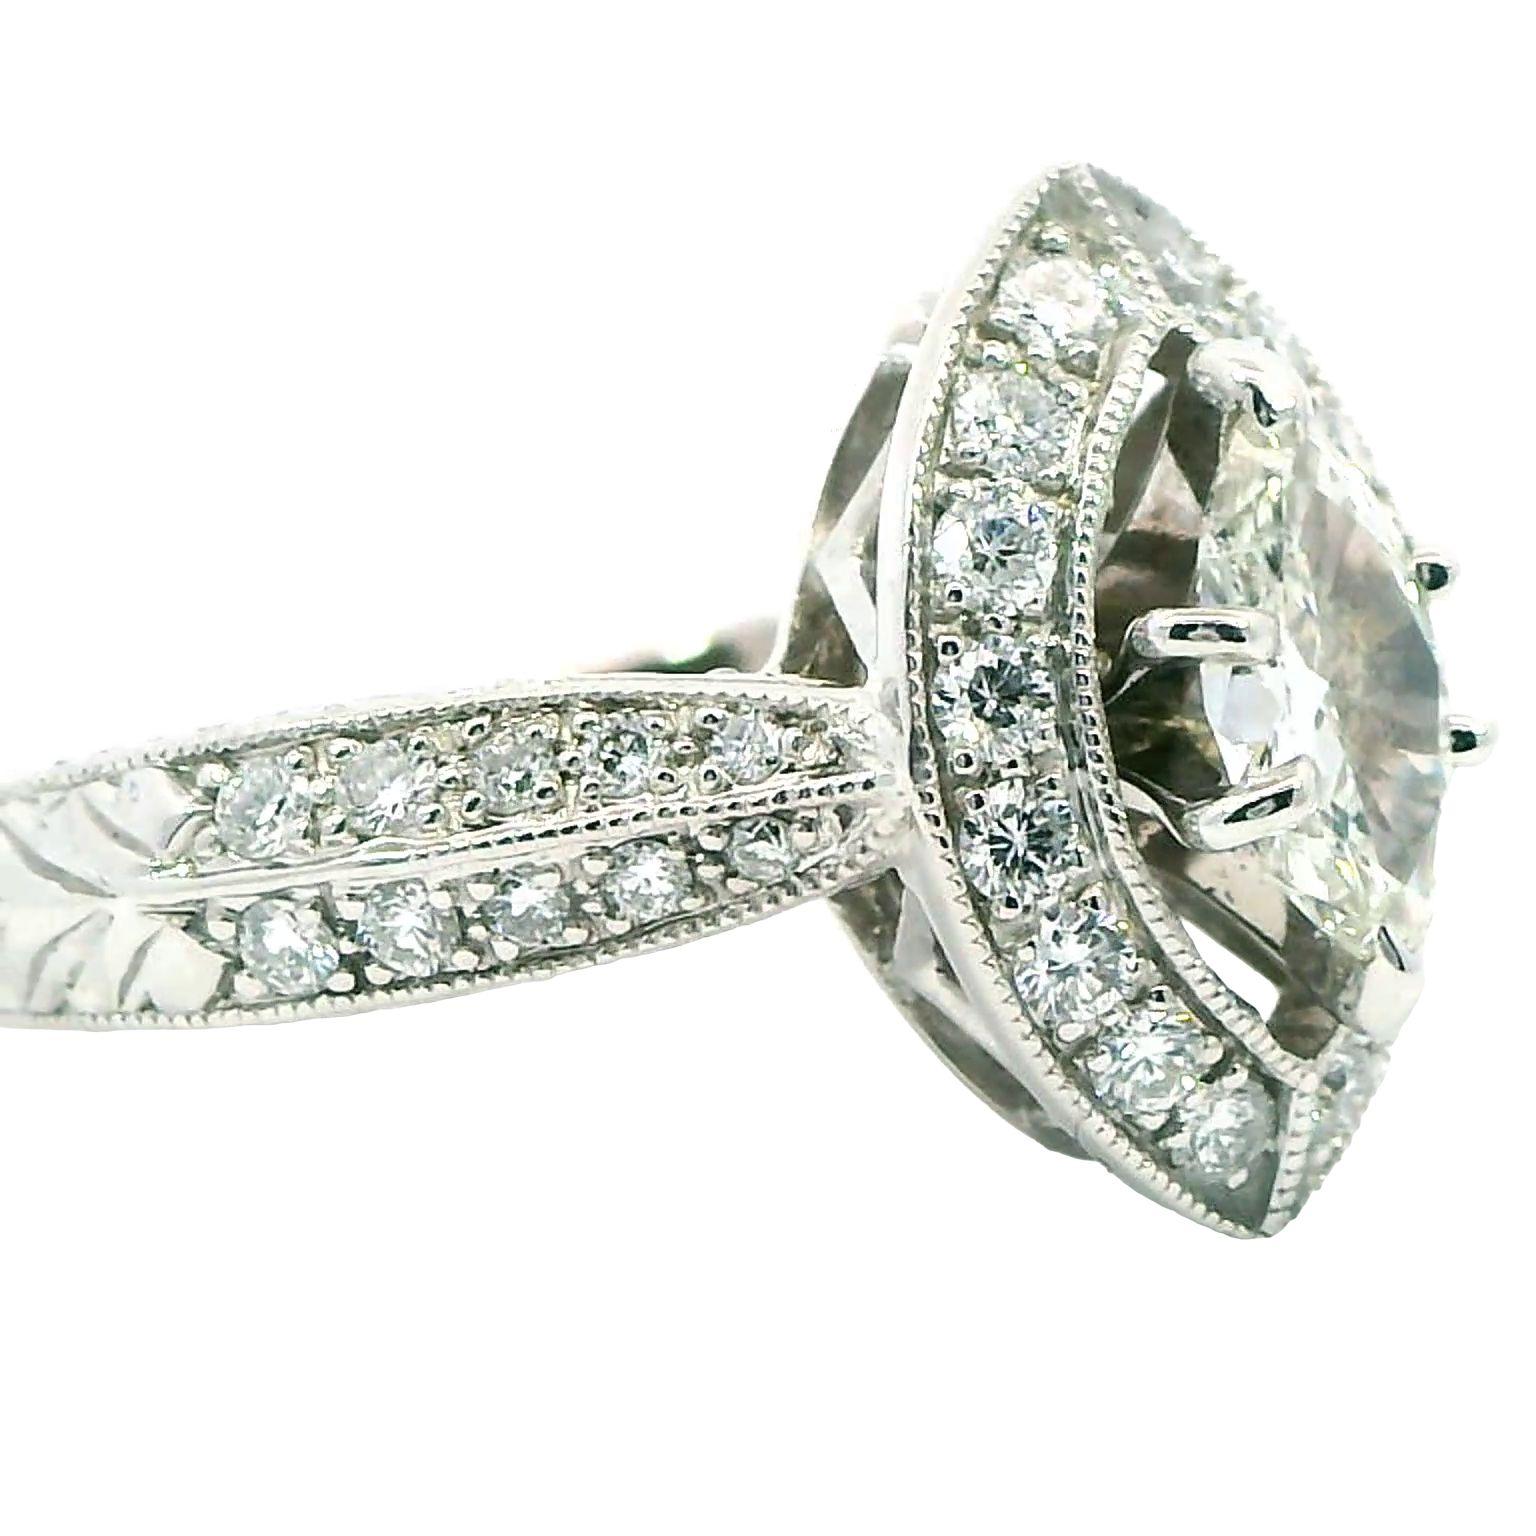 Erhöhen Sie Ihren Stil mit unserem 1,1 Karat Marquise Cluster Ring, eine schillernde Verkörperung von Raffinesse und Glamour. Dieser exquisite Ring besticht durch eine Gruppe von Marquise-Diamanten mit einem Gesamtgewicht von 1,01 Karat, die mit